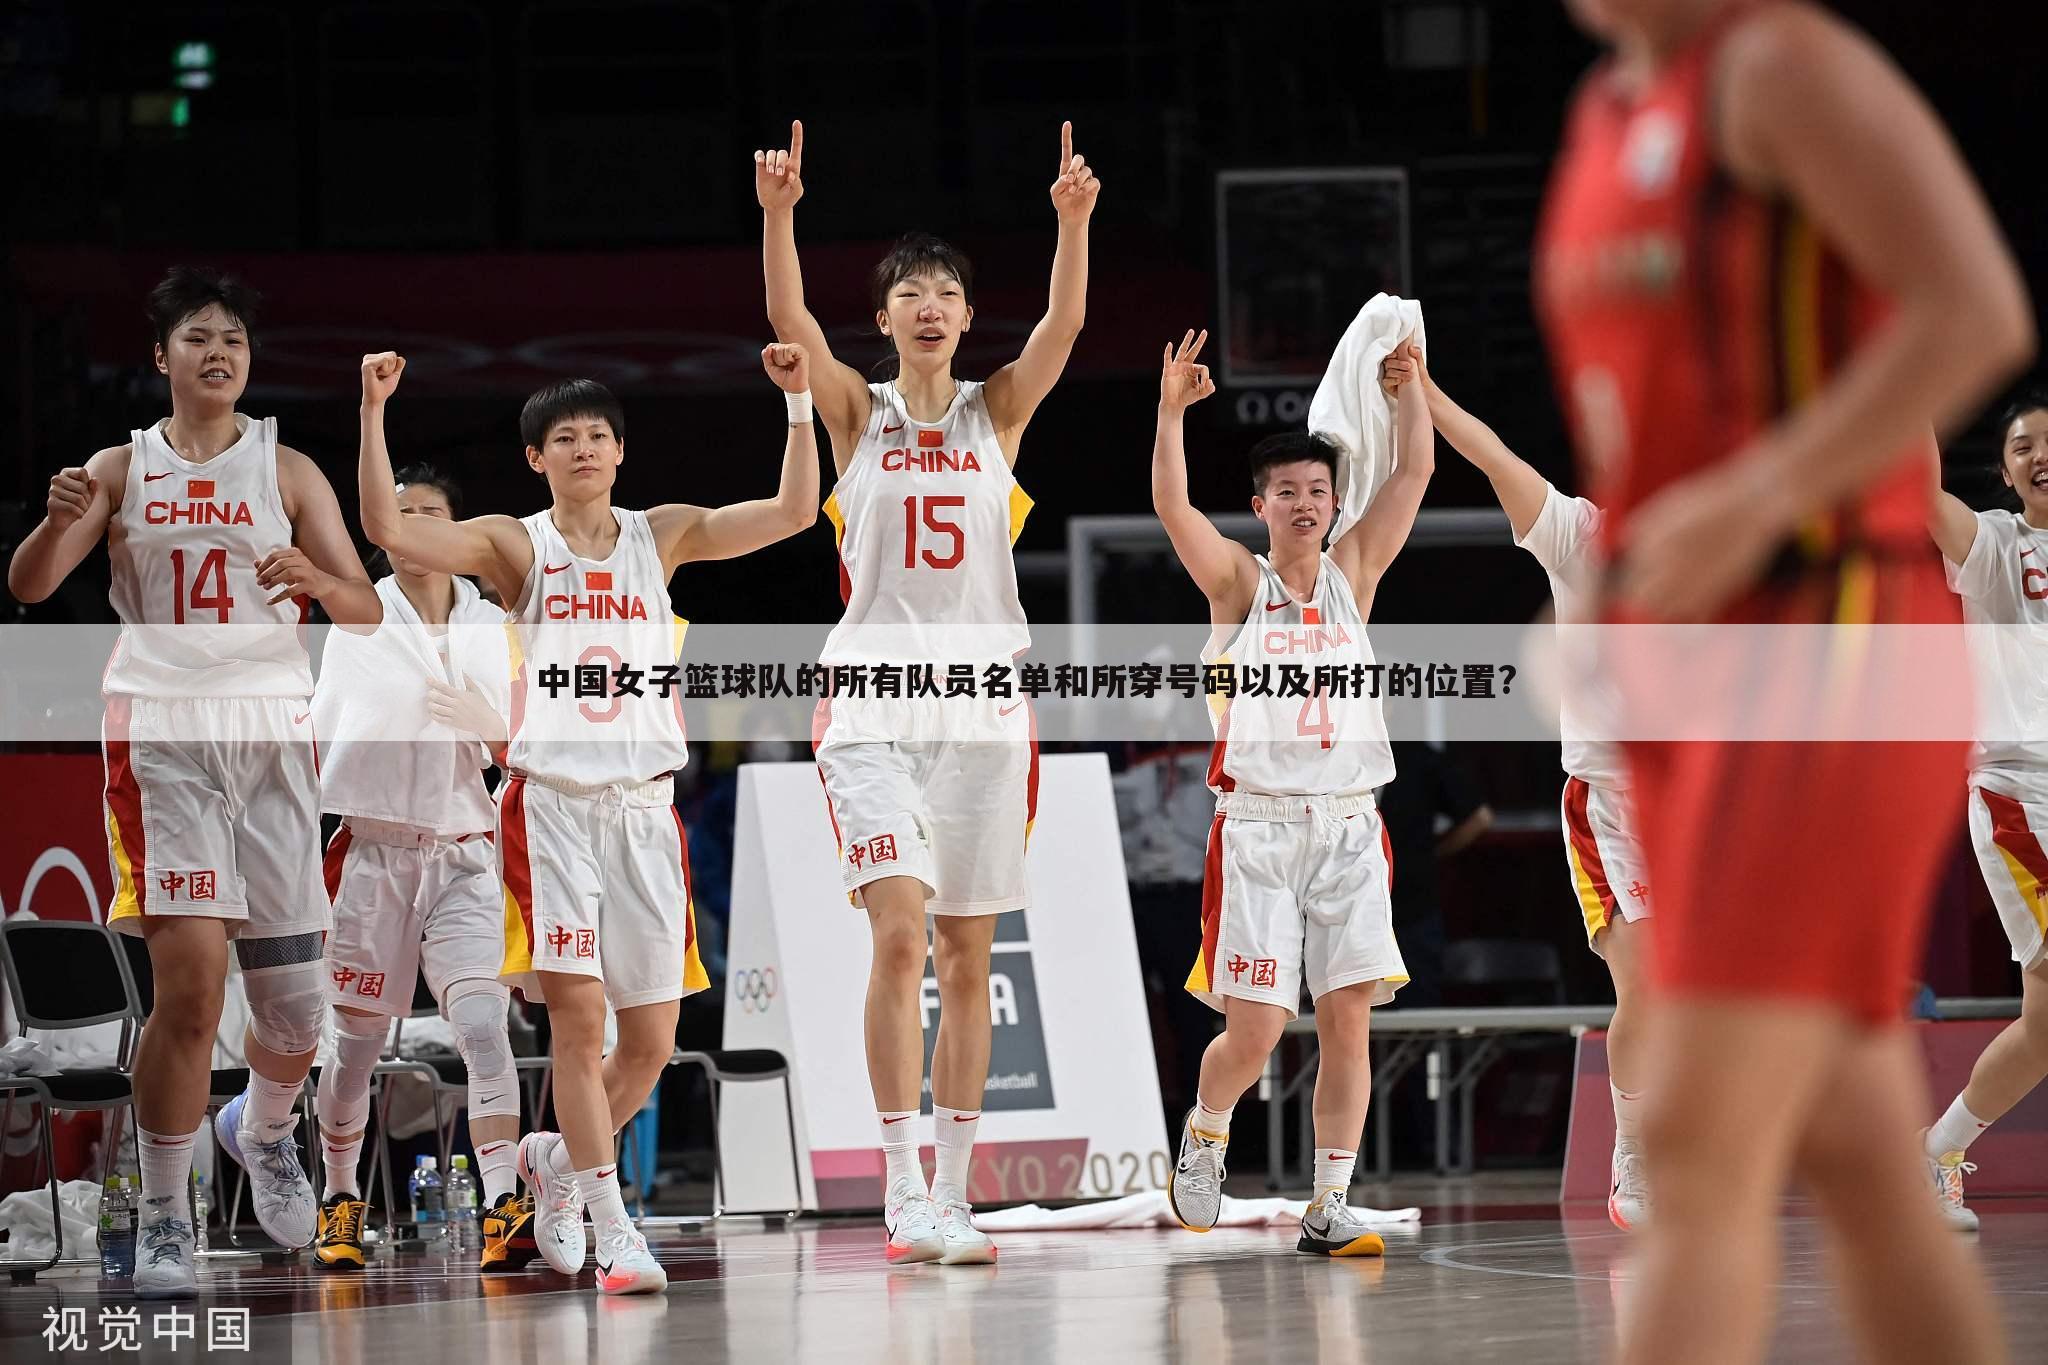 中国女子篮球队的所有队员名单和所穿号码以及所打的位置?